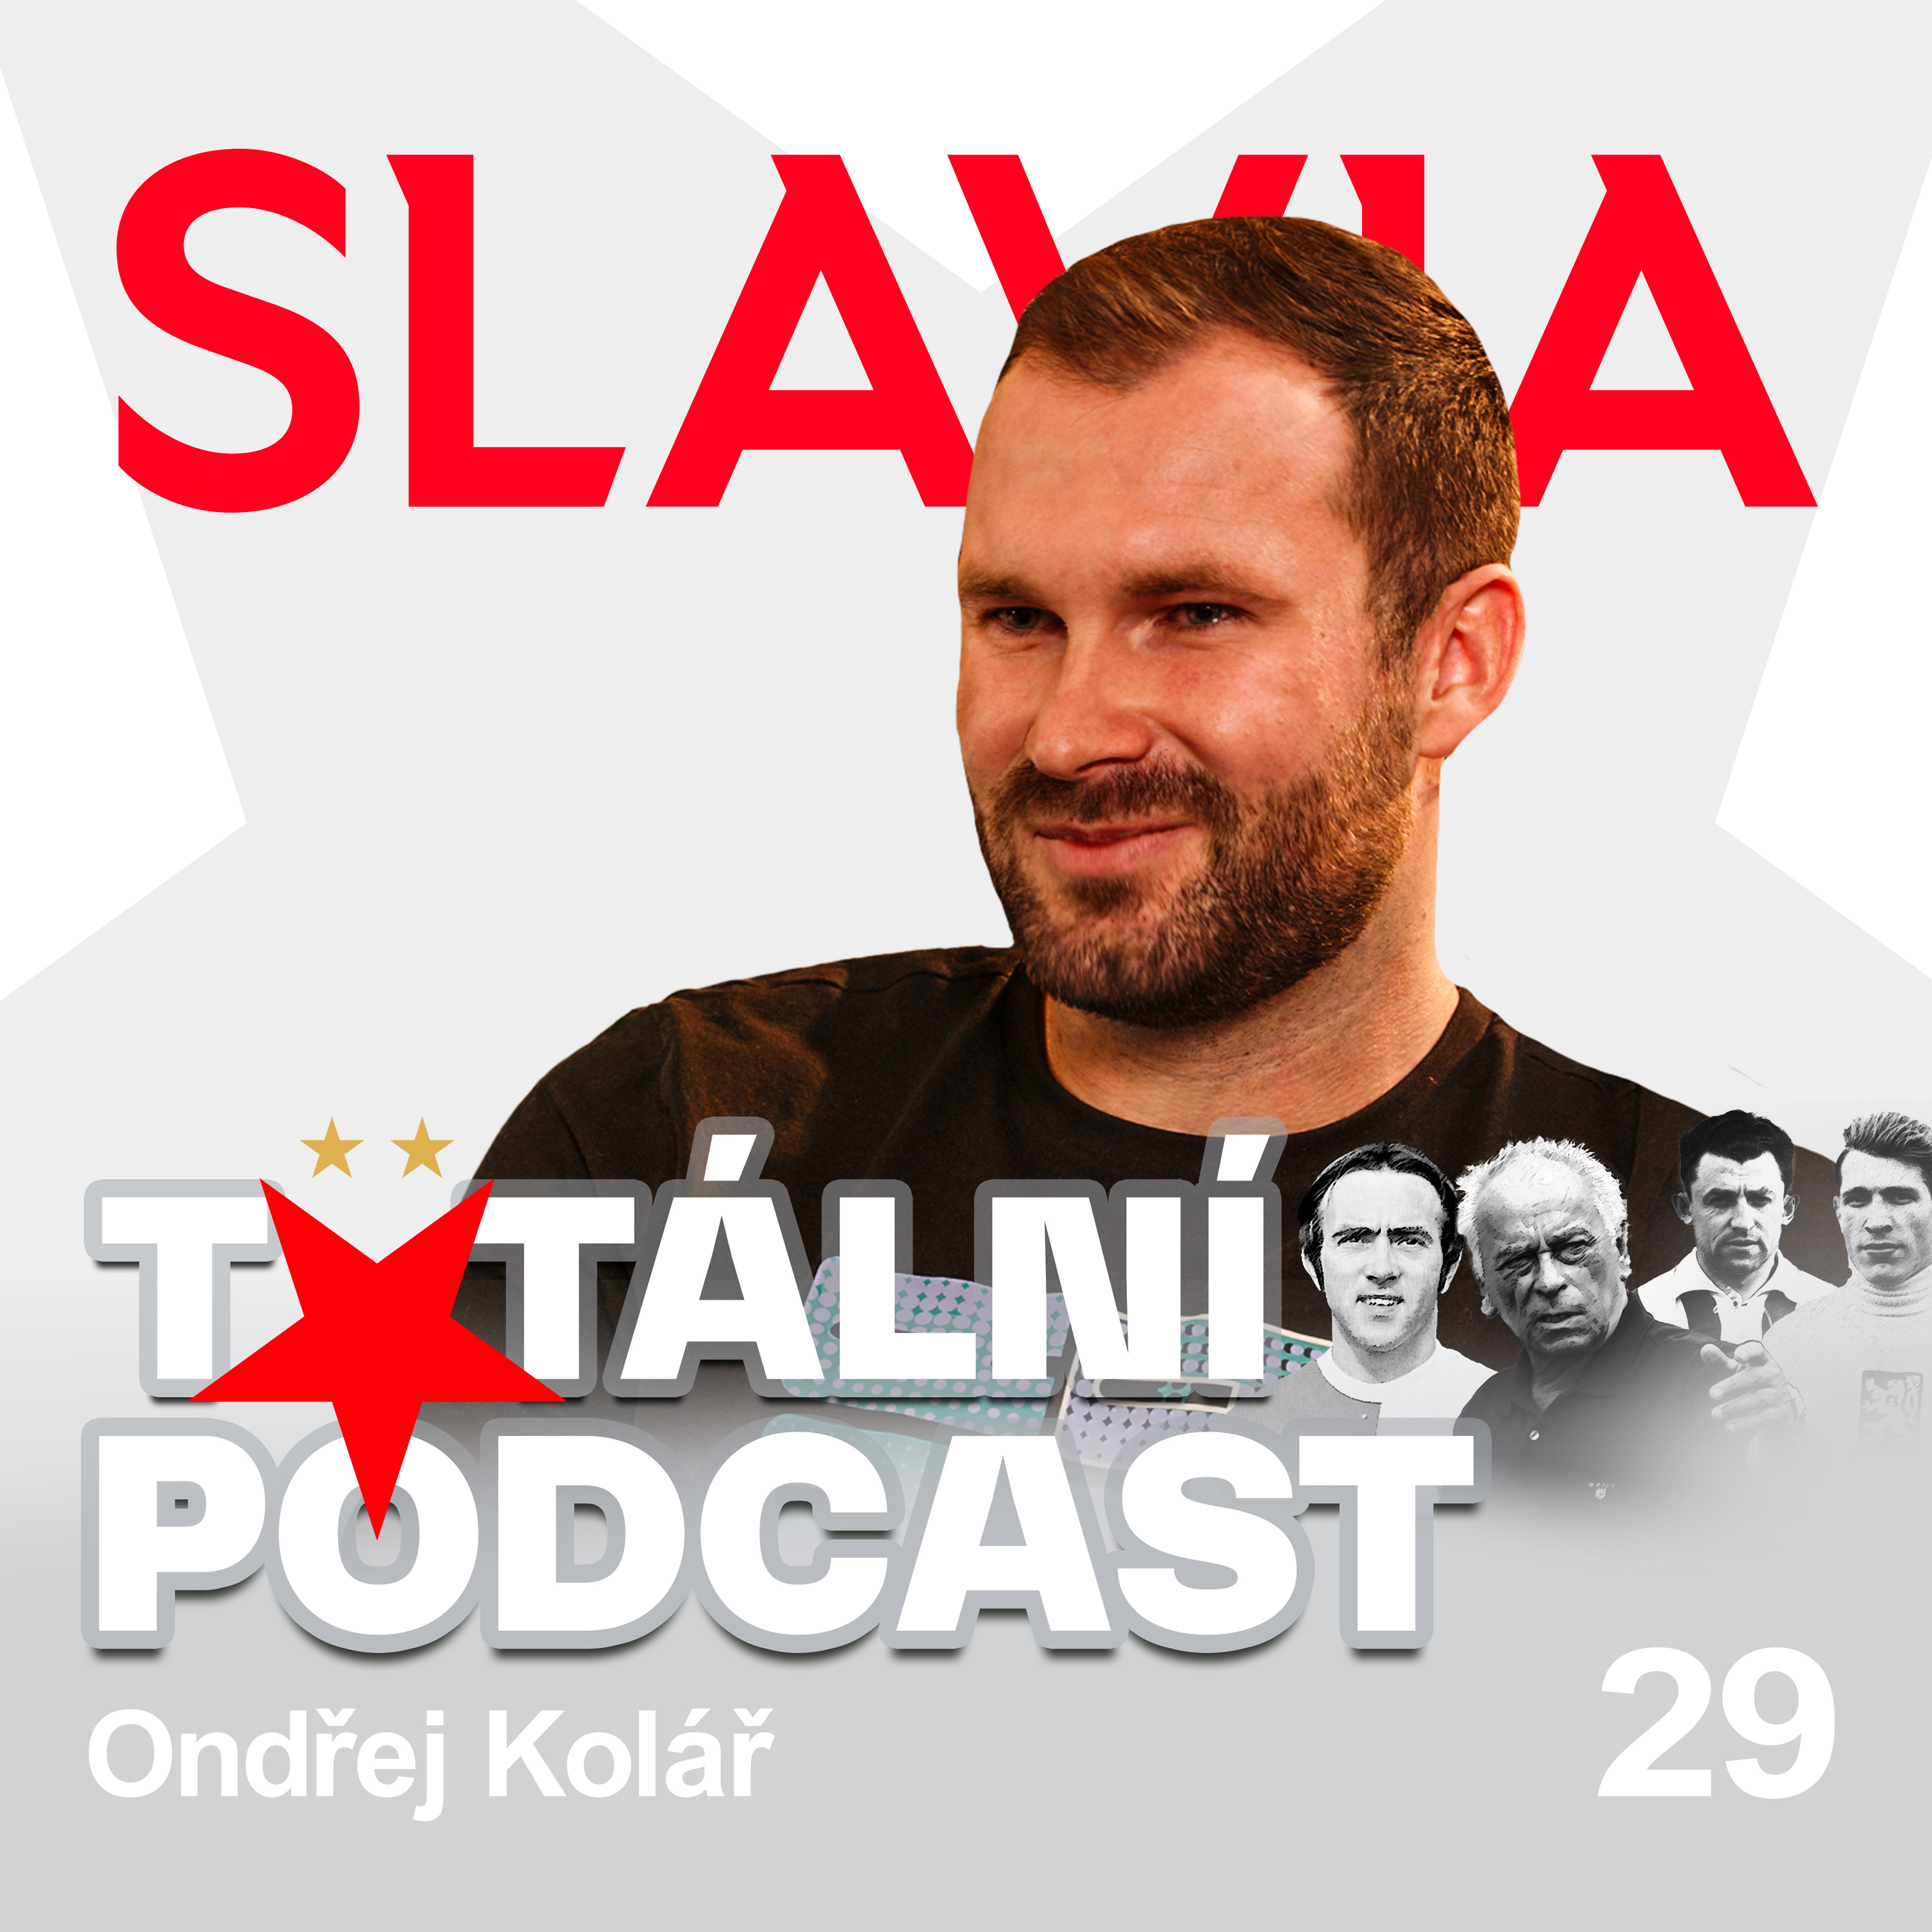 Totální sezona! SK Slavia Praha